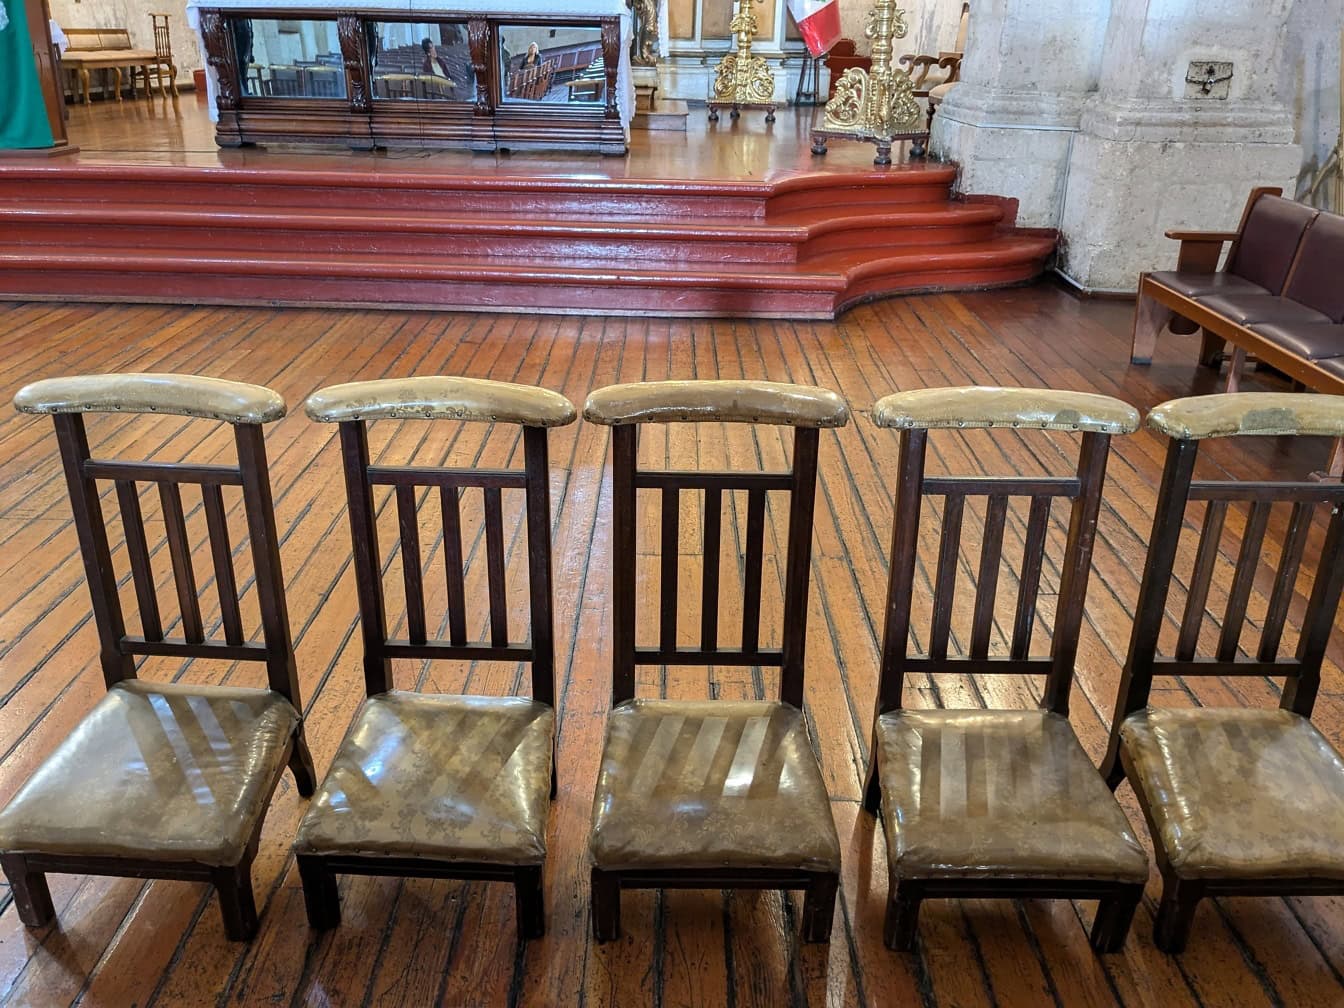 แถวเก้าอี้ไม้เก่าในโบสถ์คาทอลิกในเปรู